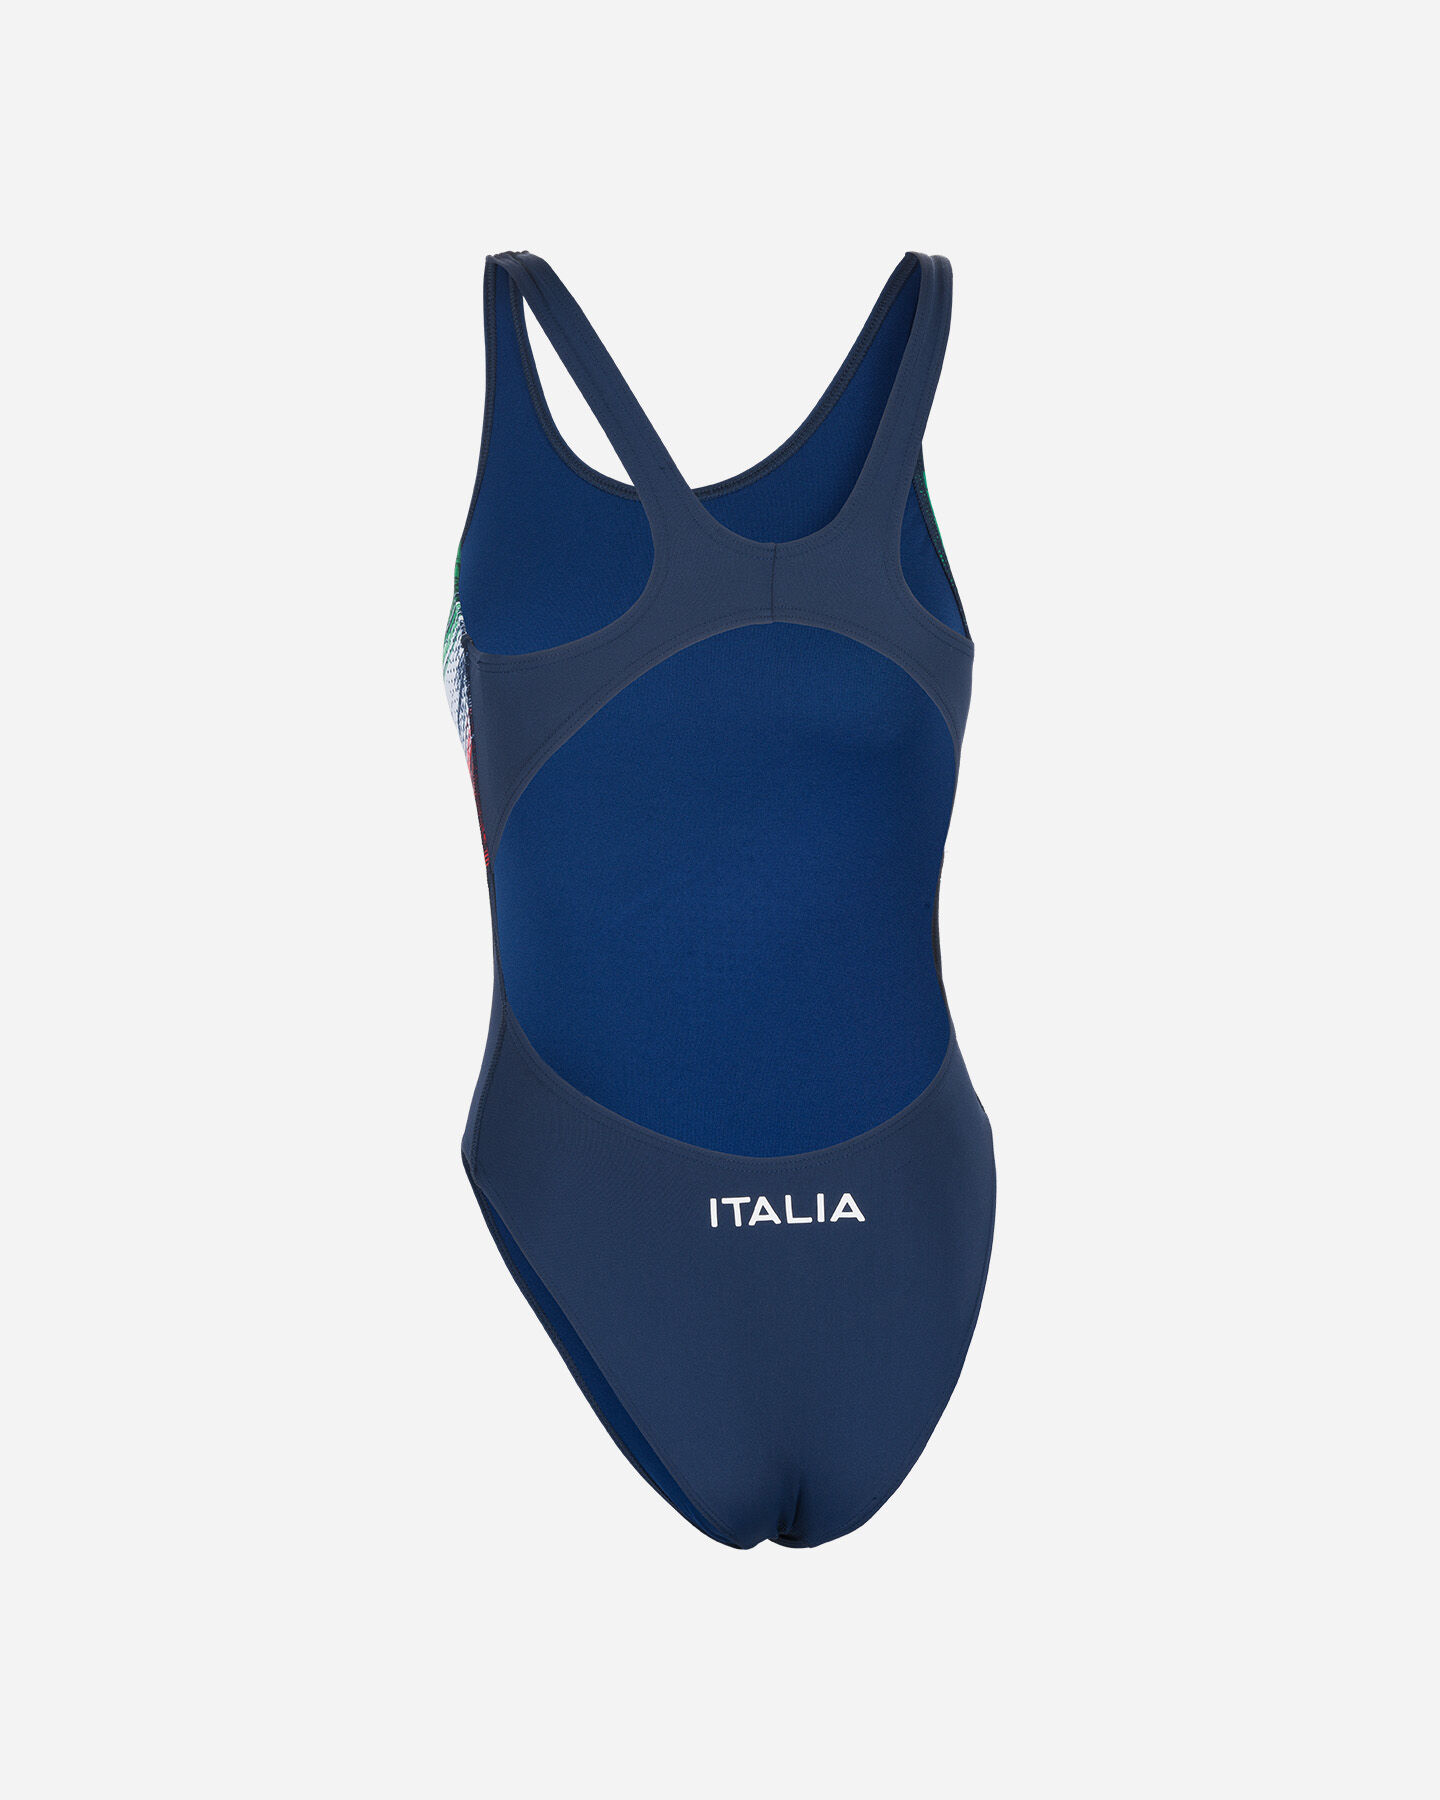  Costume piscina ARENA TECH FIN ITALIA W S4043235|700|36 scatto 1